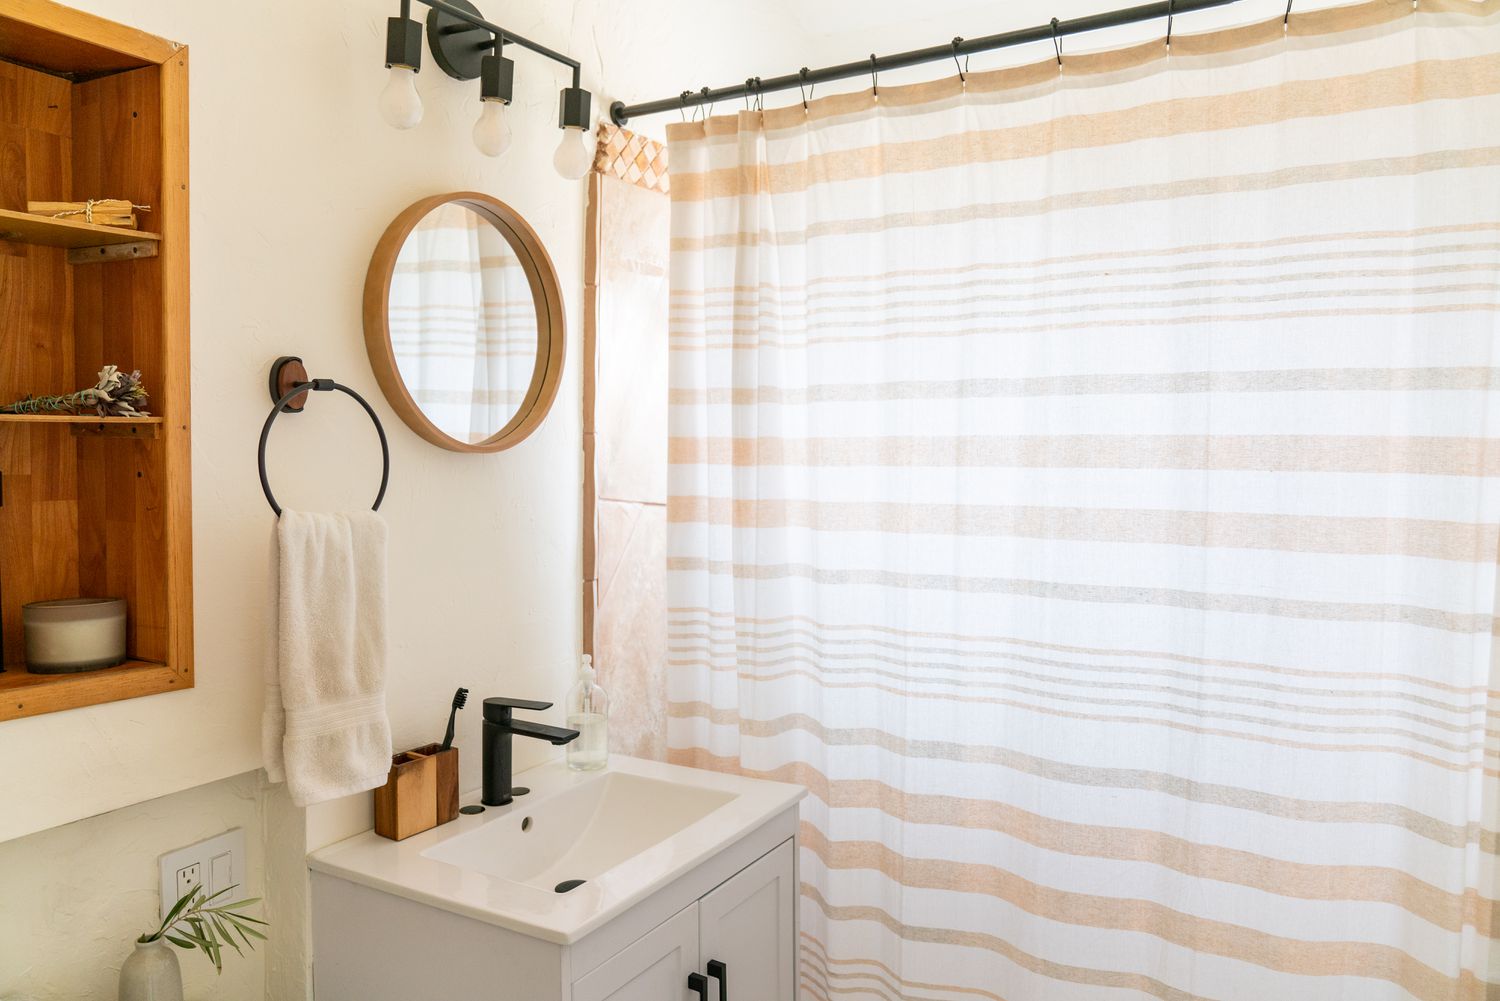 Petite salle de bain avec petit miroir rond à côté d'un rideau de douche blanc et tan